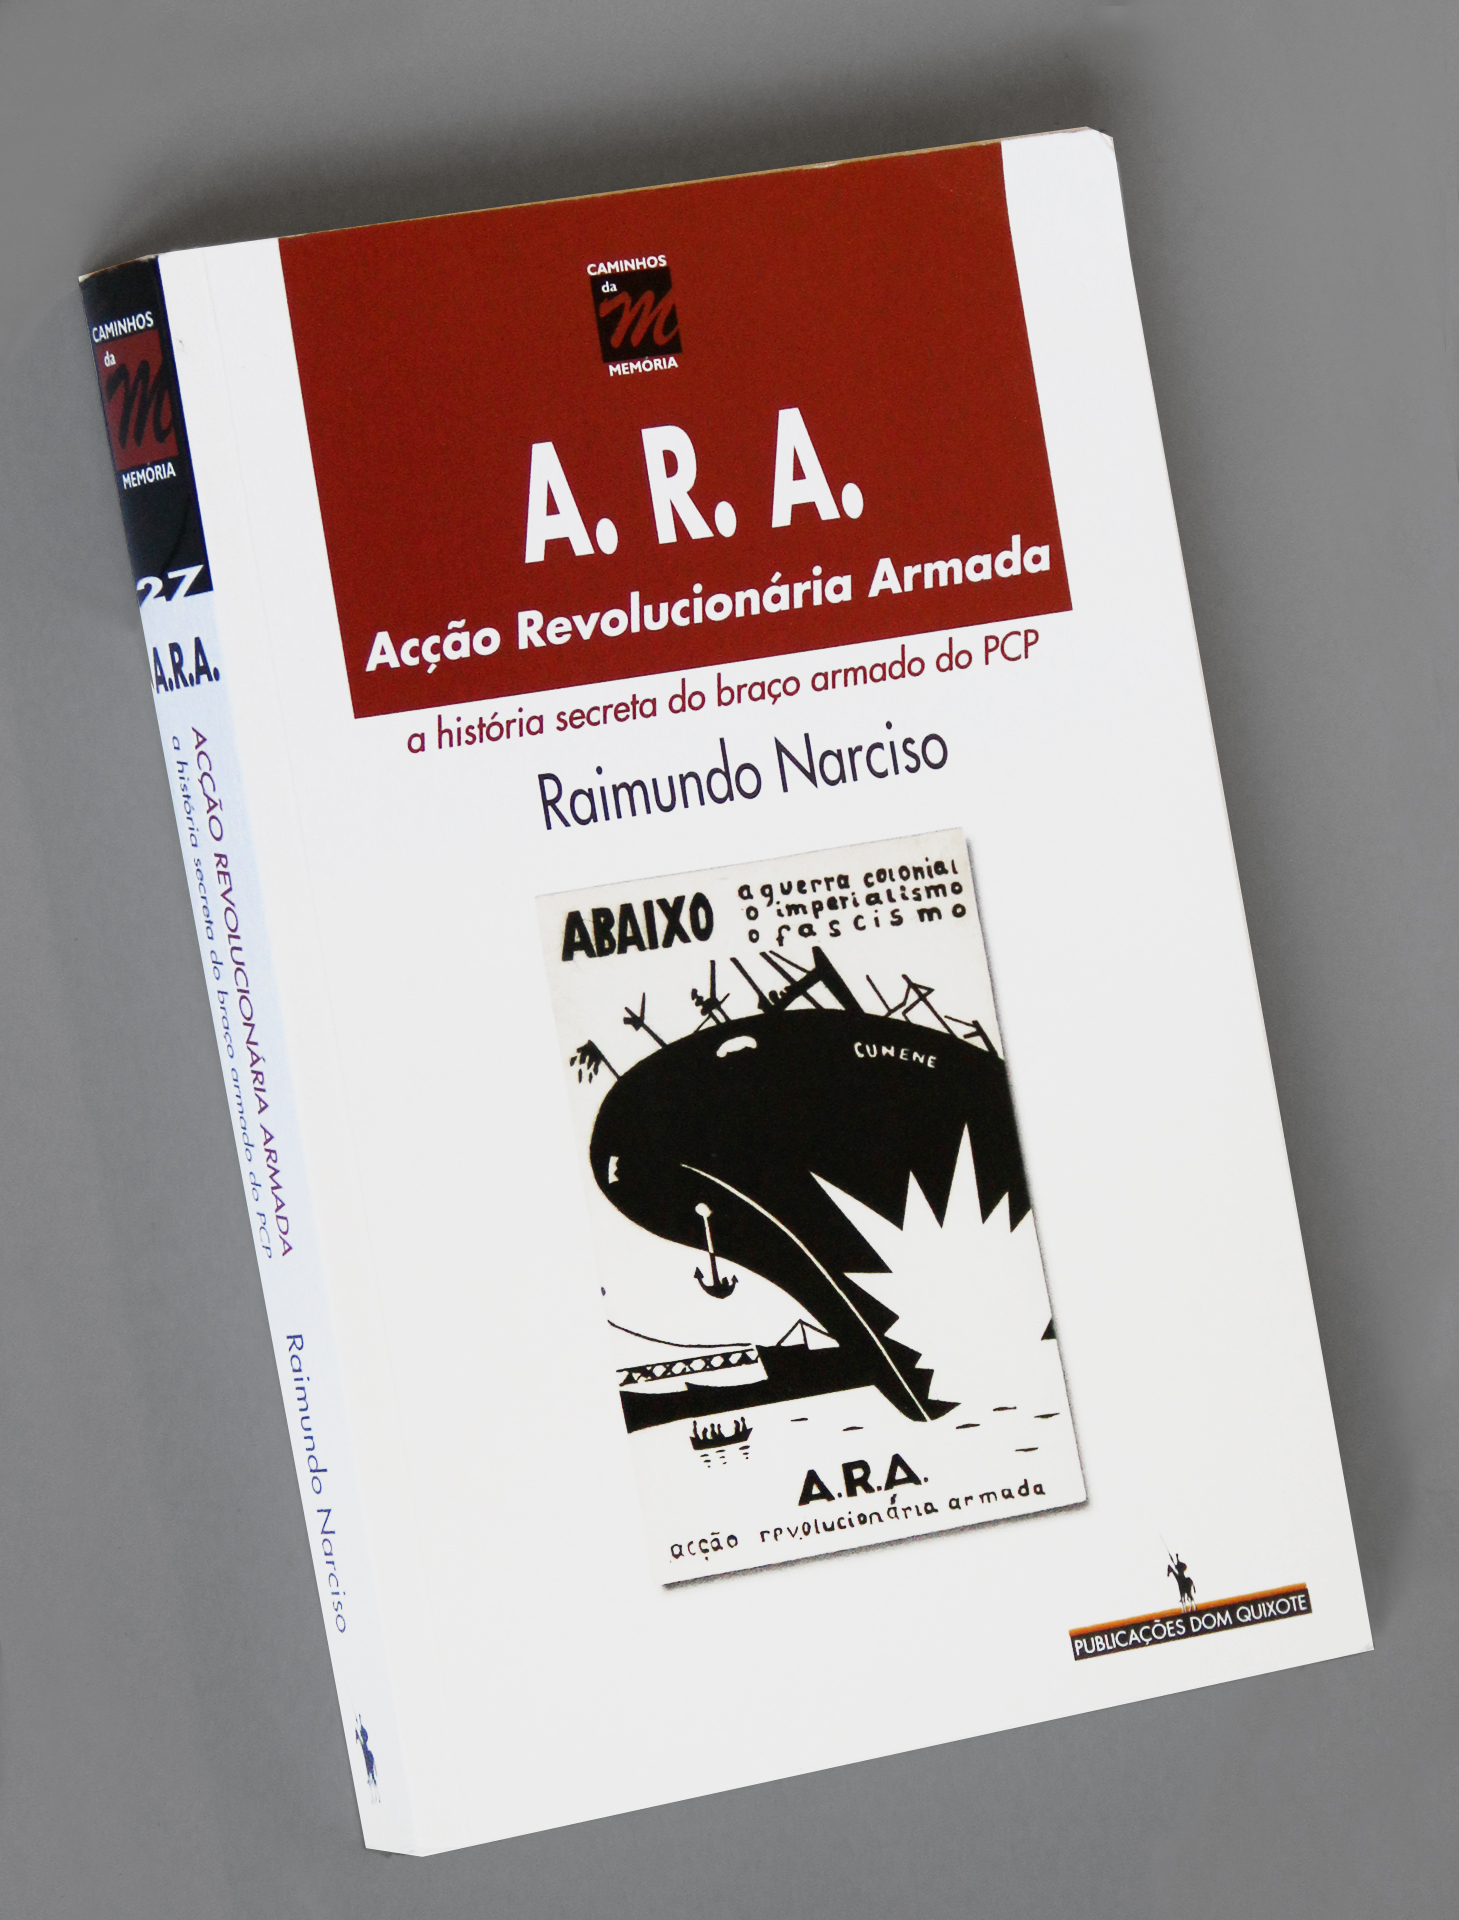 ARA book